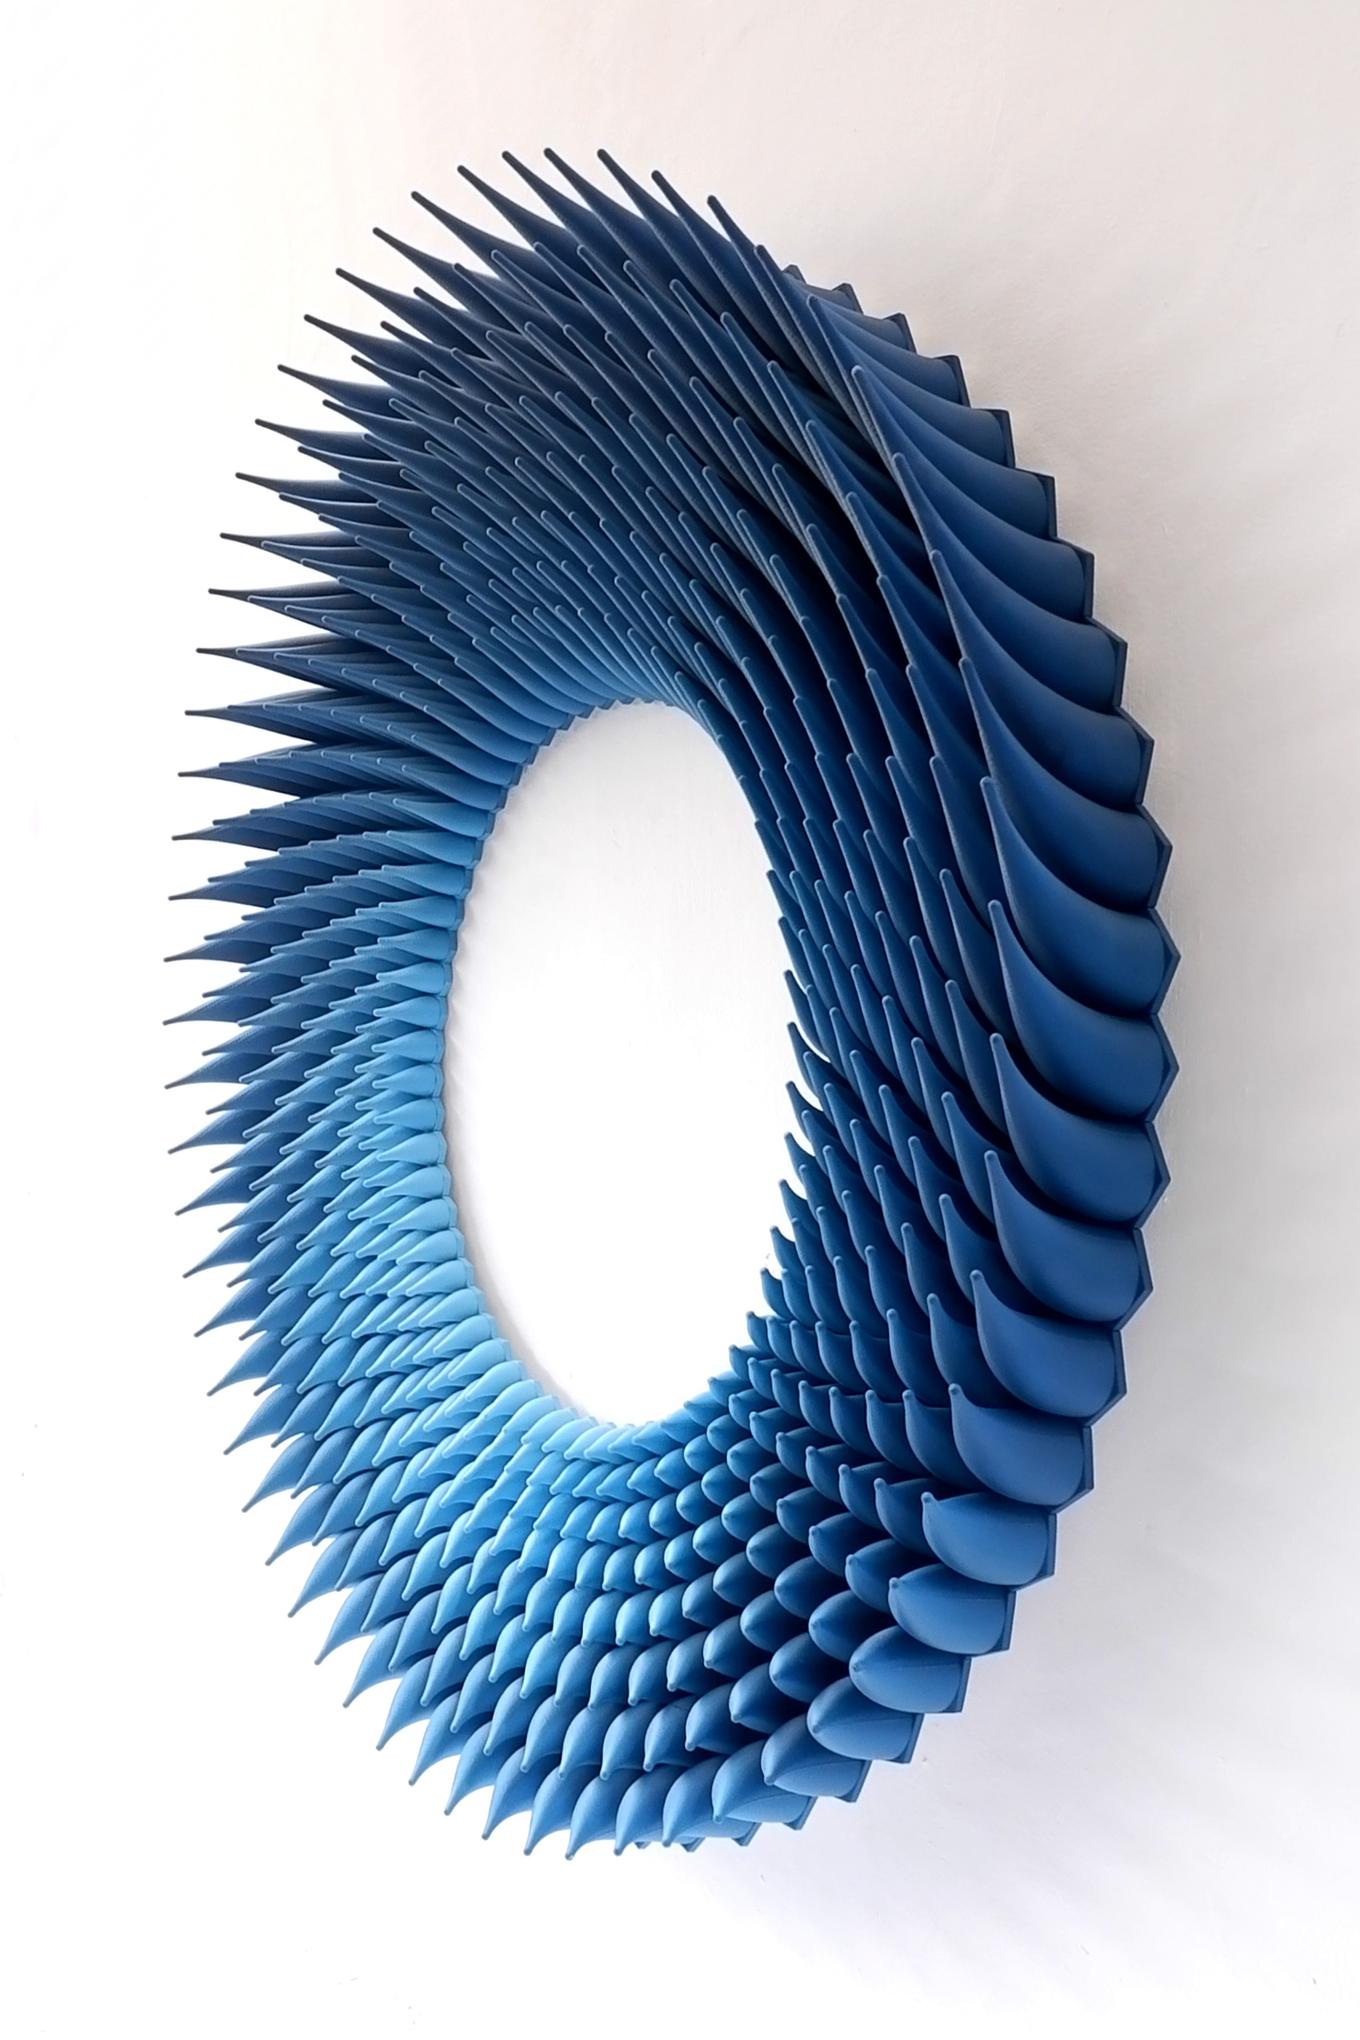 Jagged Loop | Herschel Shapiro | Modern Dimensional 3D Wall Art Mosaic